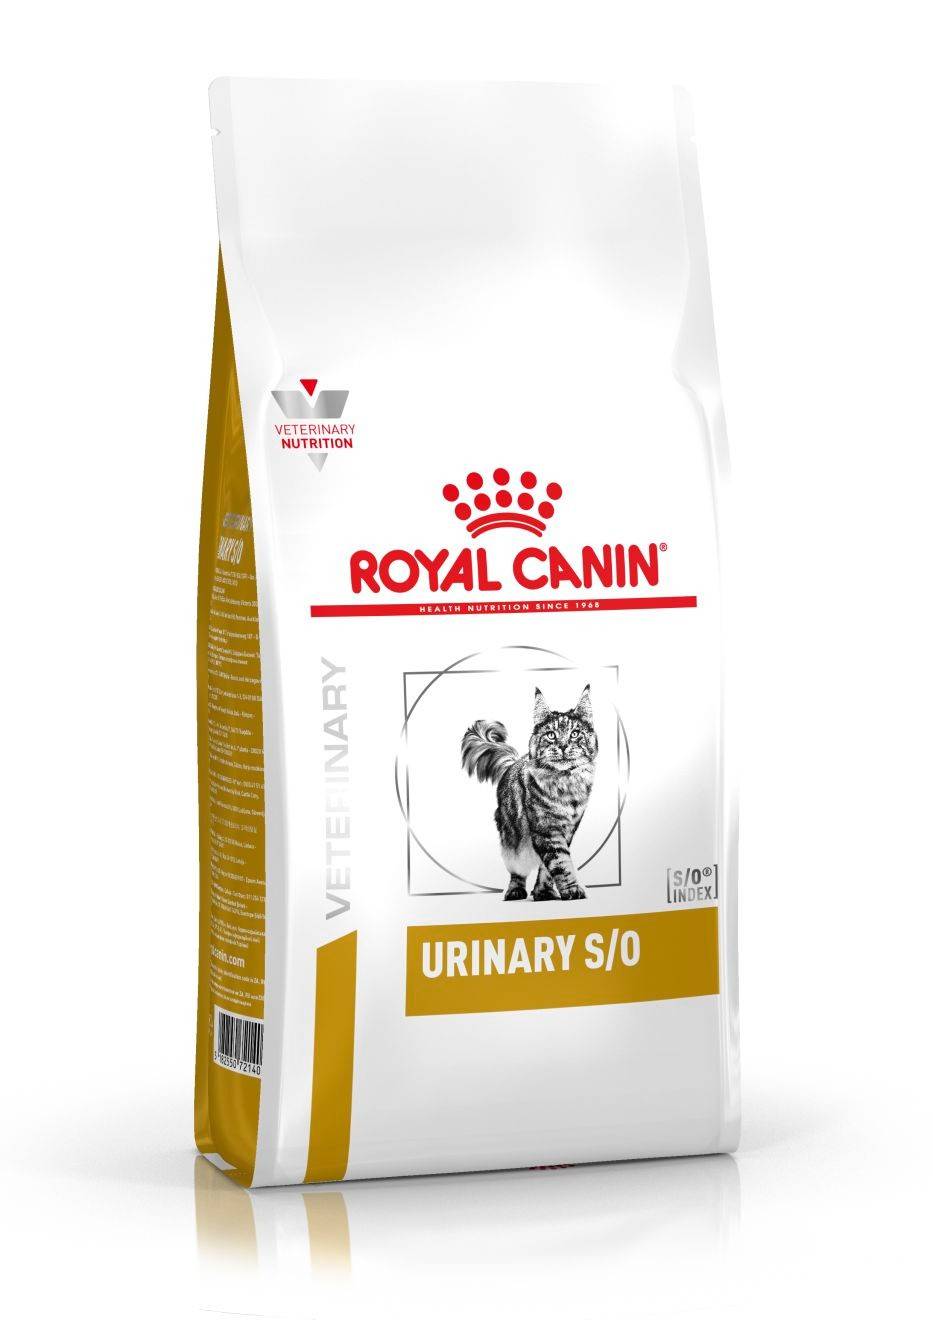 ROYAL CANIN URINARY S/0 FELINE –лікувальний сухий корм для дорослих котів при захворюванні дистальних відділів сечовидільної системи